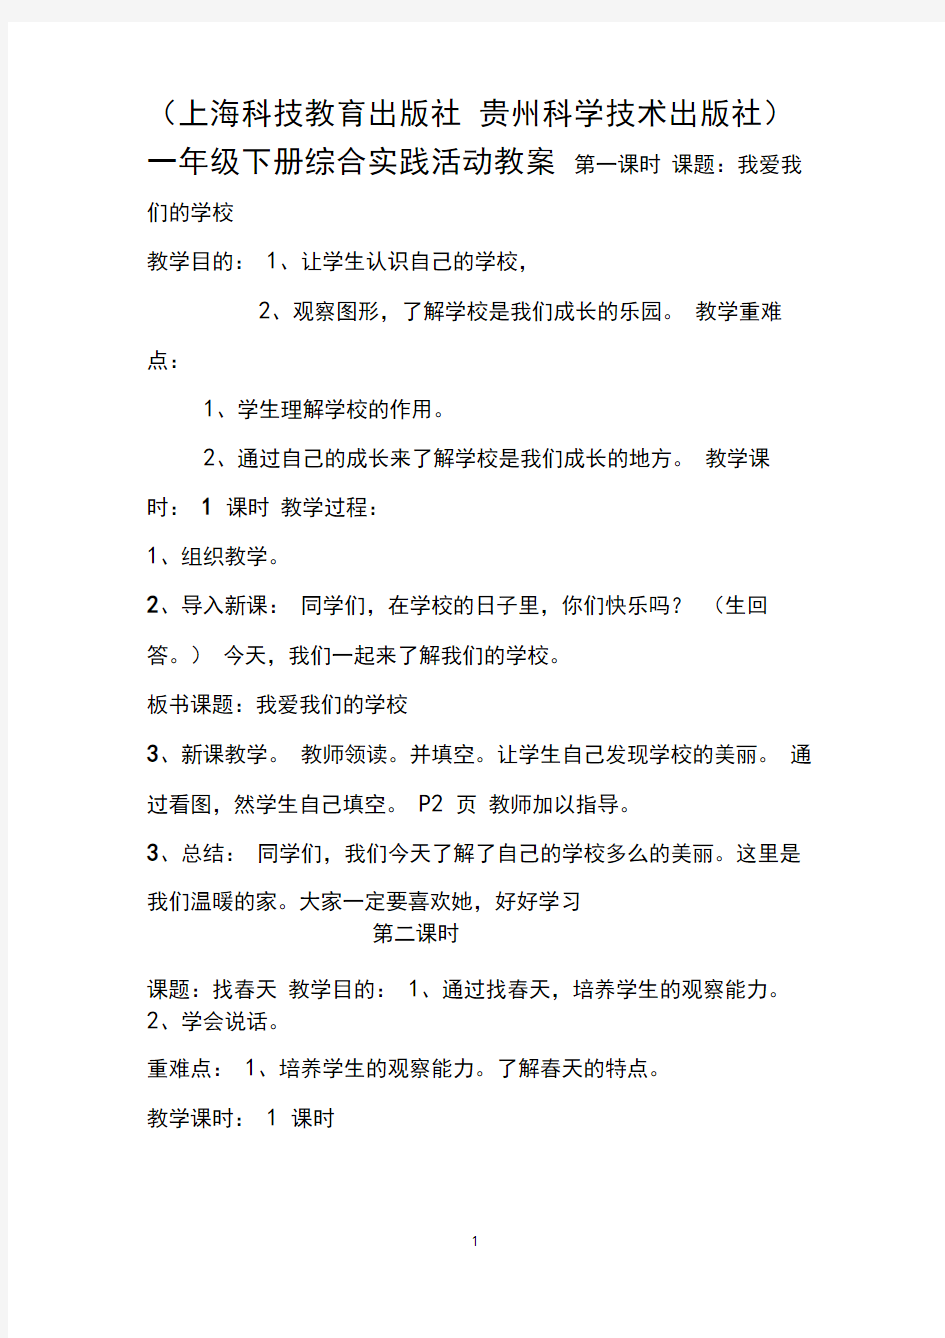 (上海科技教育出版社贵州科学技术出版社)一年级下册《综合实践活动》全册教案【完整版】